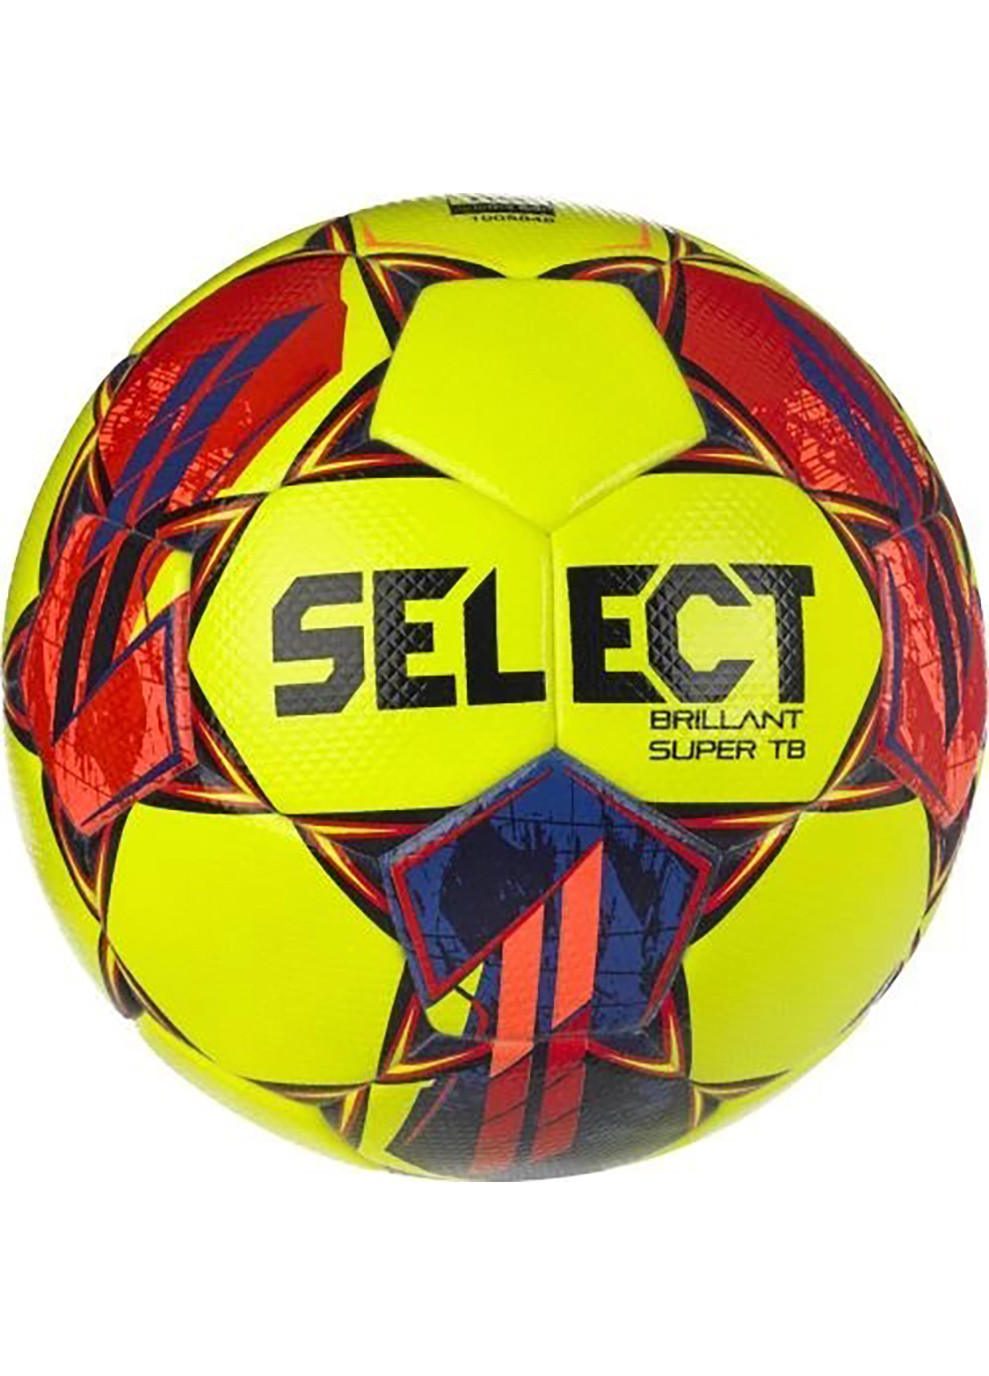 М'яч футбольний BRILLANT SUPER FIFA TB v23 жовтий, червоний Уні 5 Select (262450286)